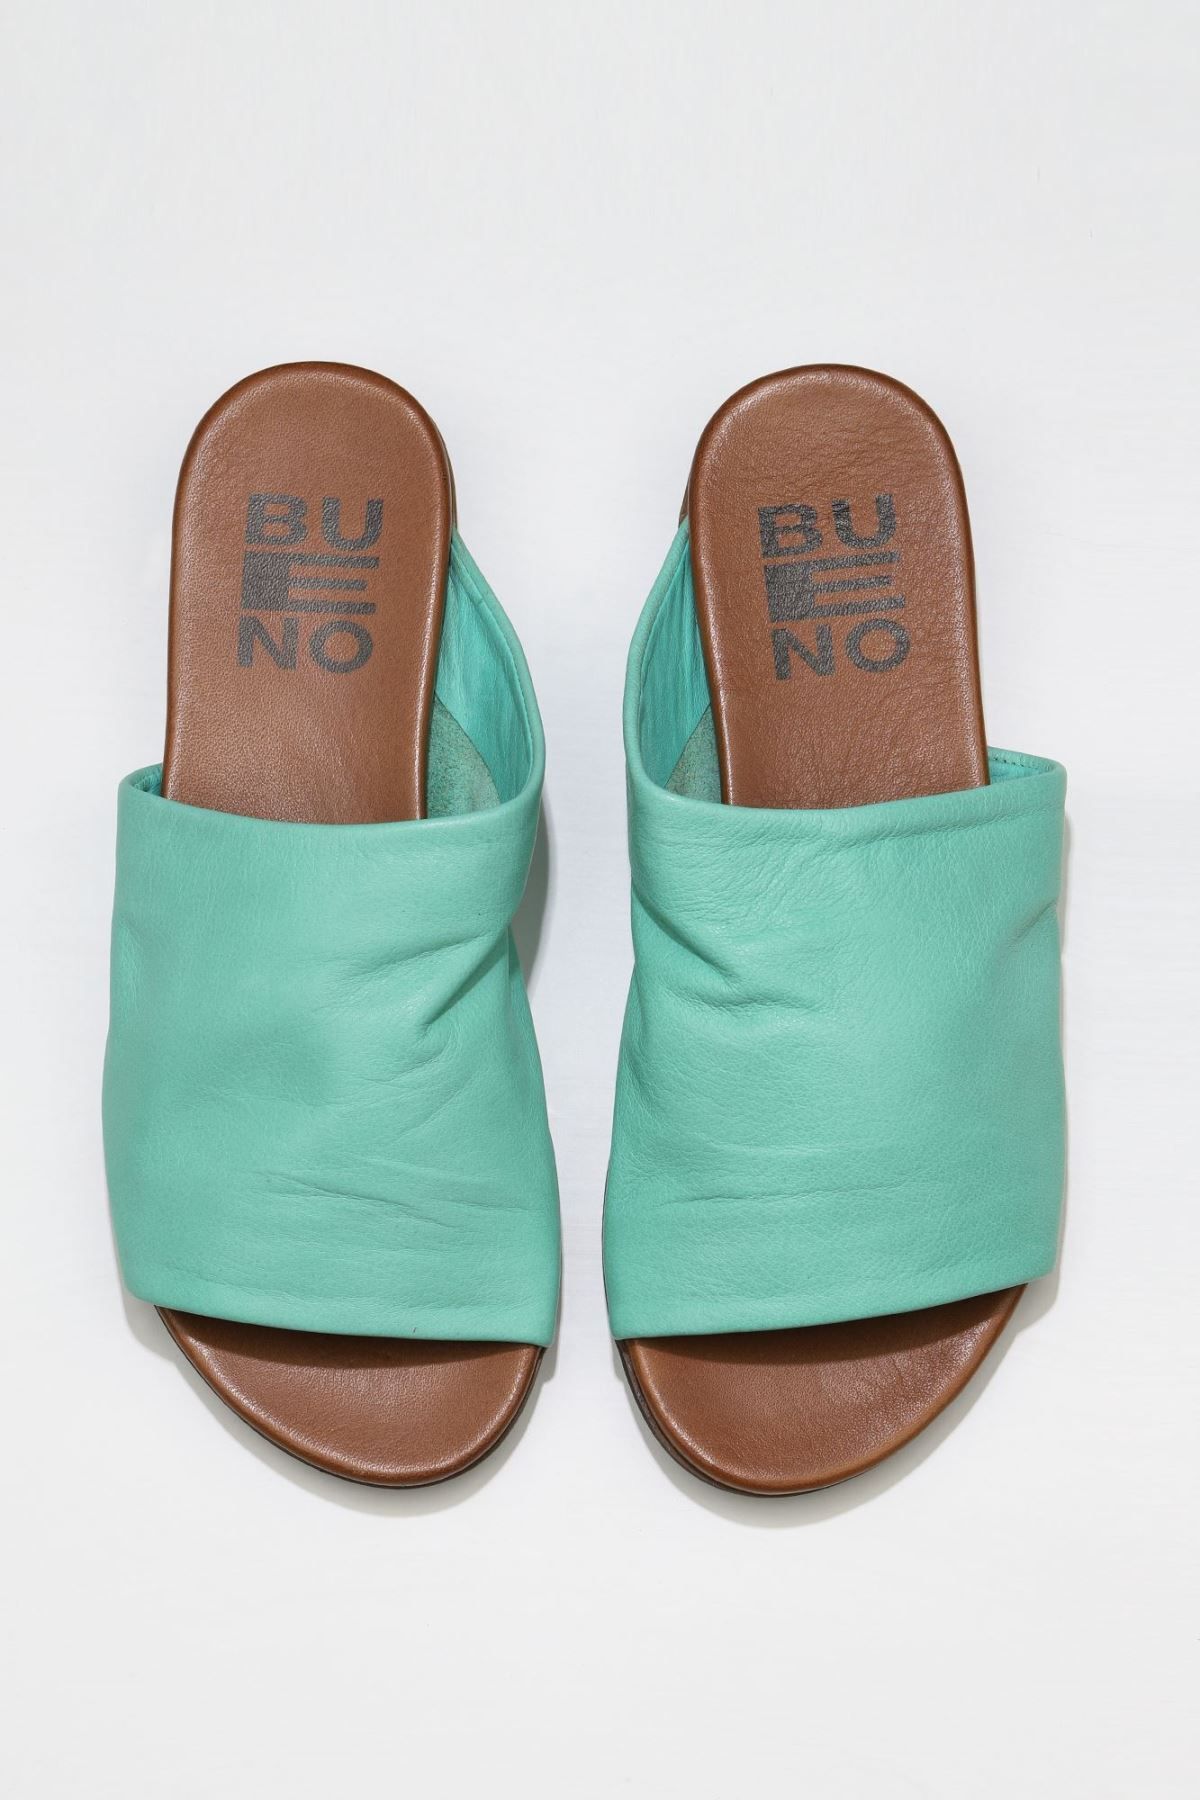 Genel Markalar Shoes Yeşil Deri Kadın Düz Terlik